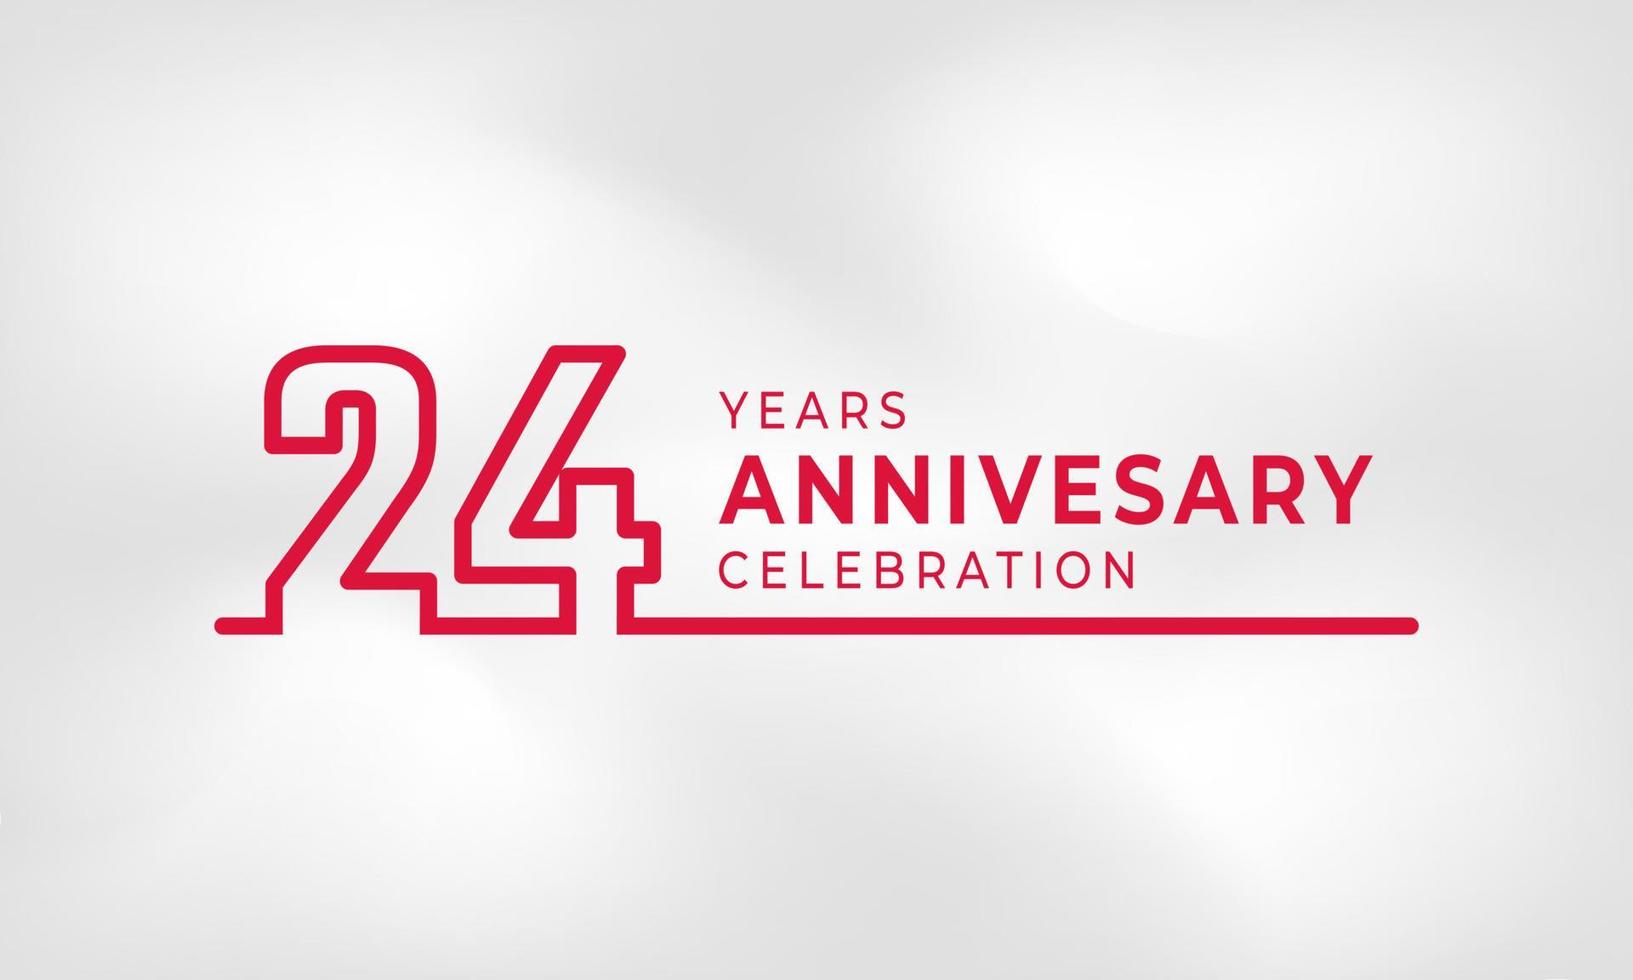 24-jarig jubileum gekoppeld logo overzicht nummer rode kleur voor viering evenement, bruiloft, wenskaart en uitnodiging geïsoleerd op een witte textuur achtergrond vector